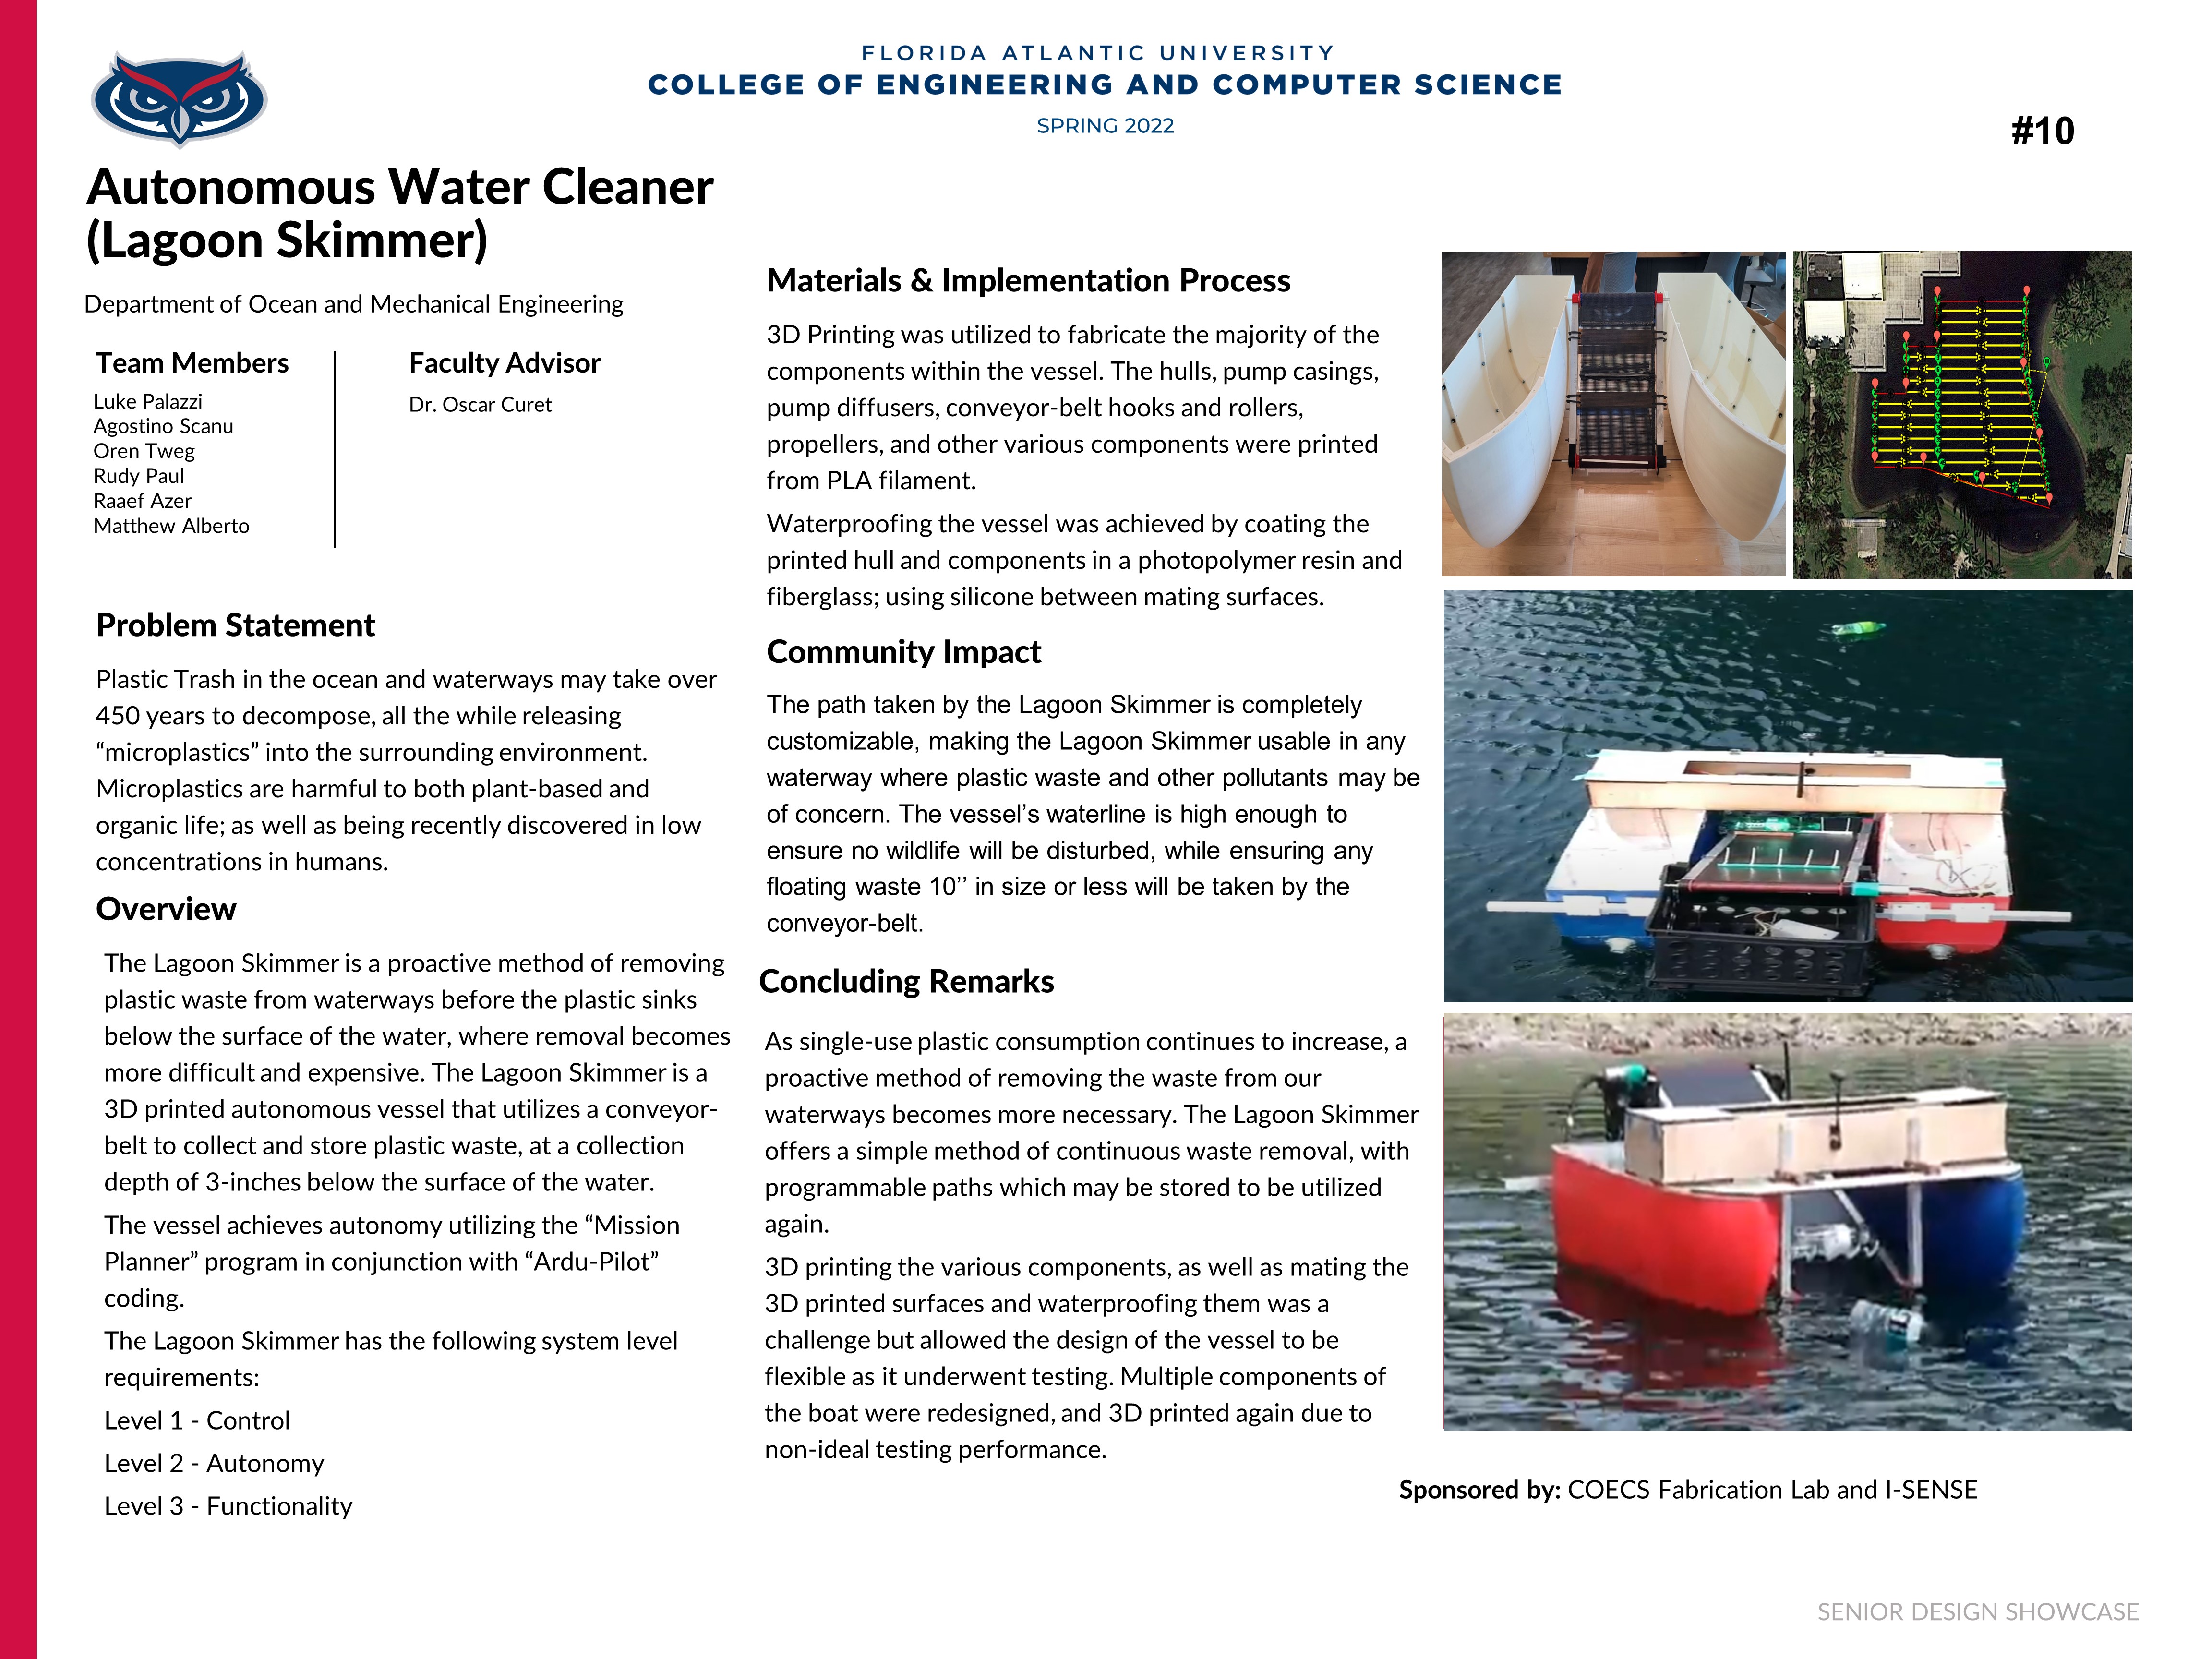 Autonomous Water Cleaner